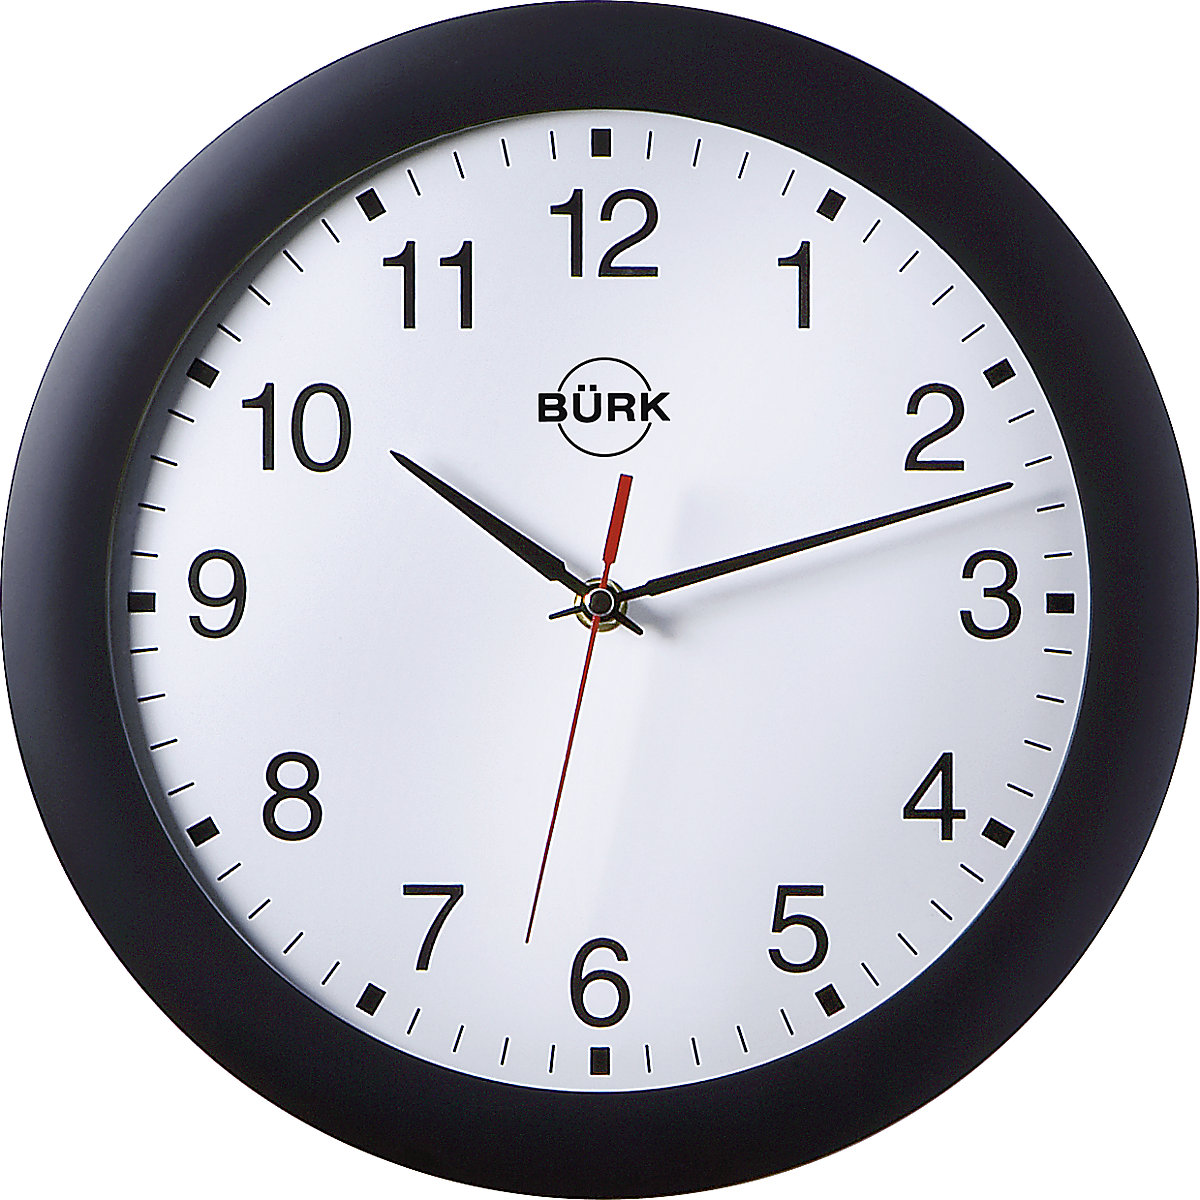 Zegar ścienny z tworzywa ABS, Ø 300 mm, mechanizm zegarowy sterowany radiem, obudowa czarna, cyferblat biały-2